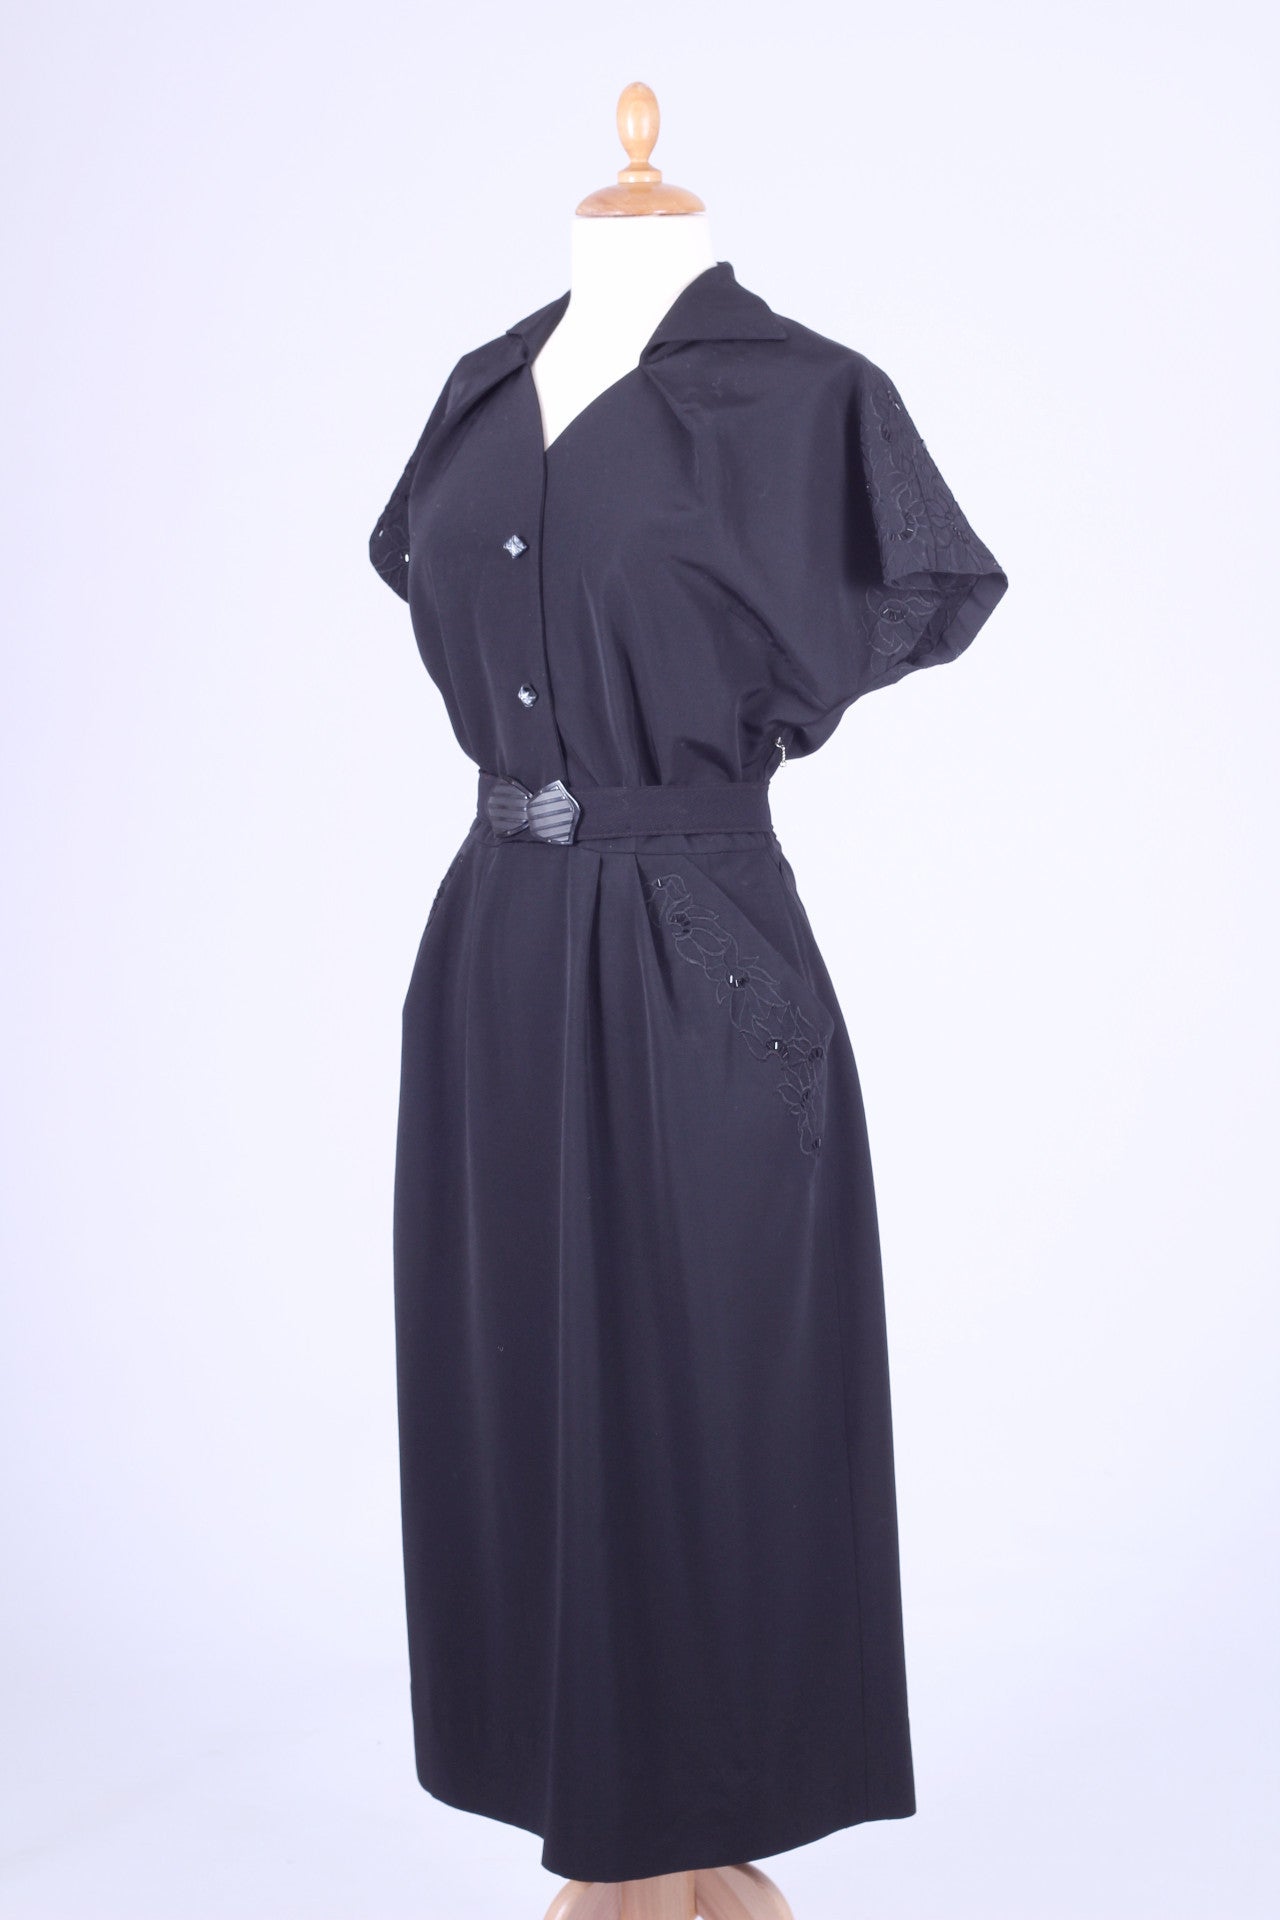 Sort kjole med perlebroderi 1950. L